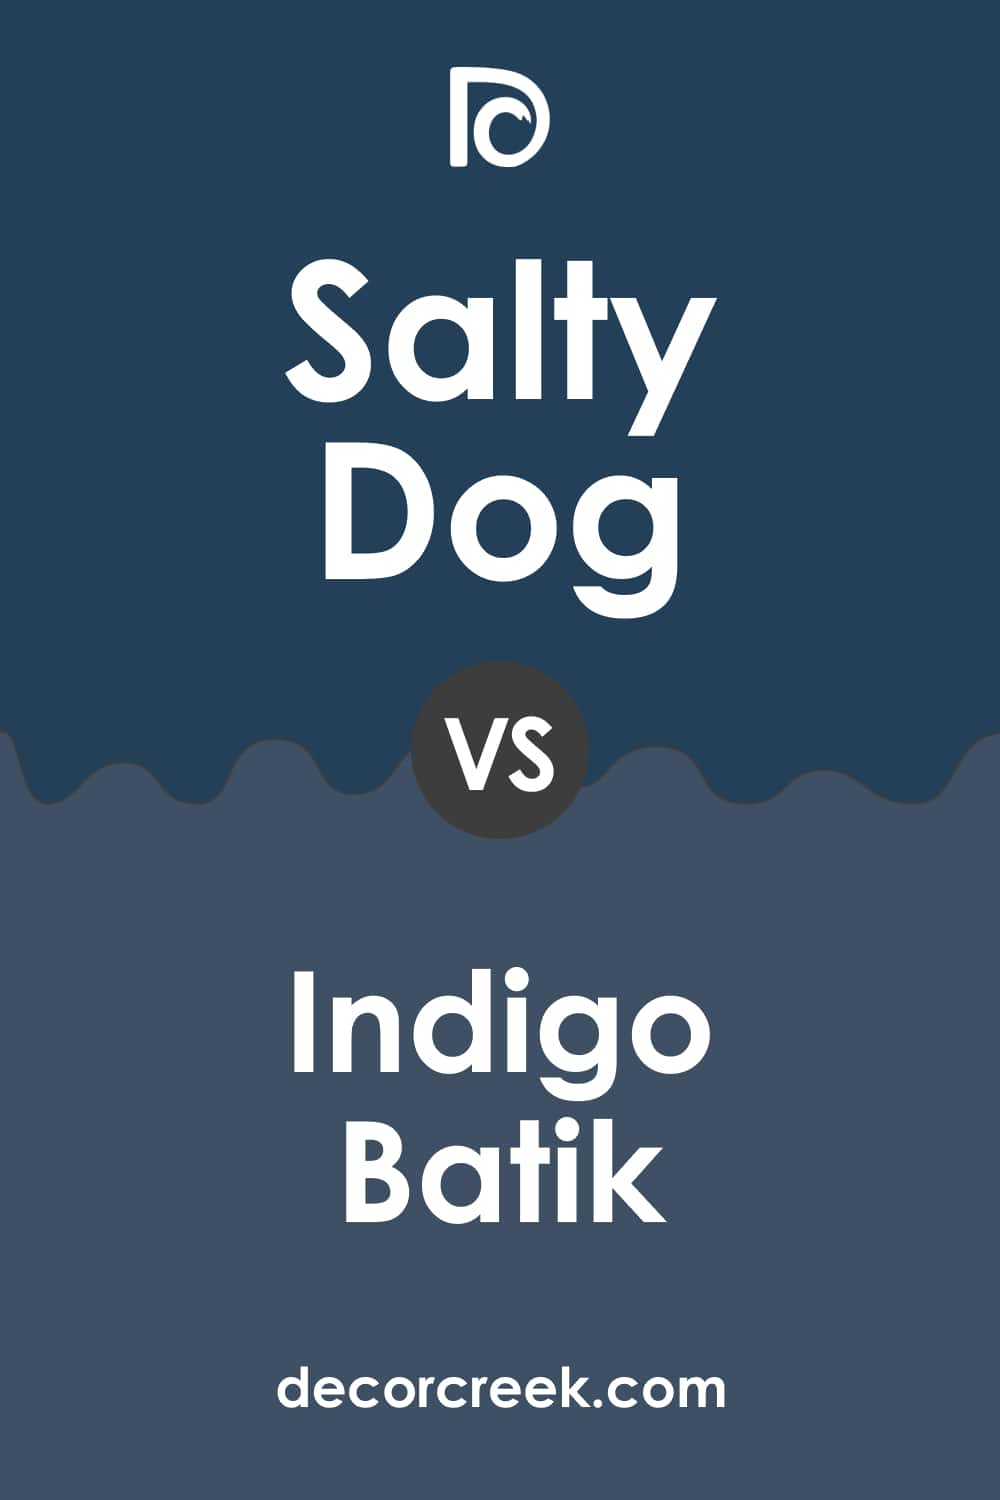 Salty Dog vs Indigo Batik